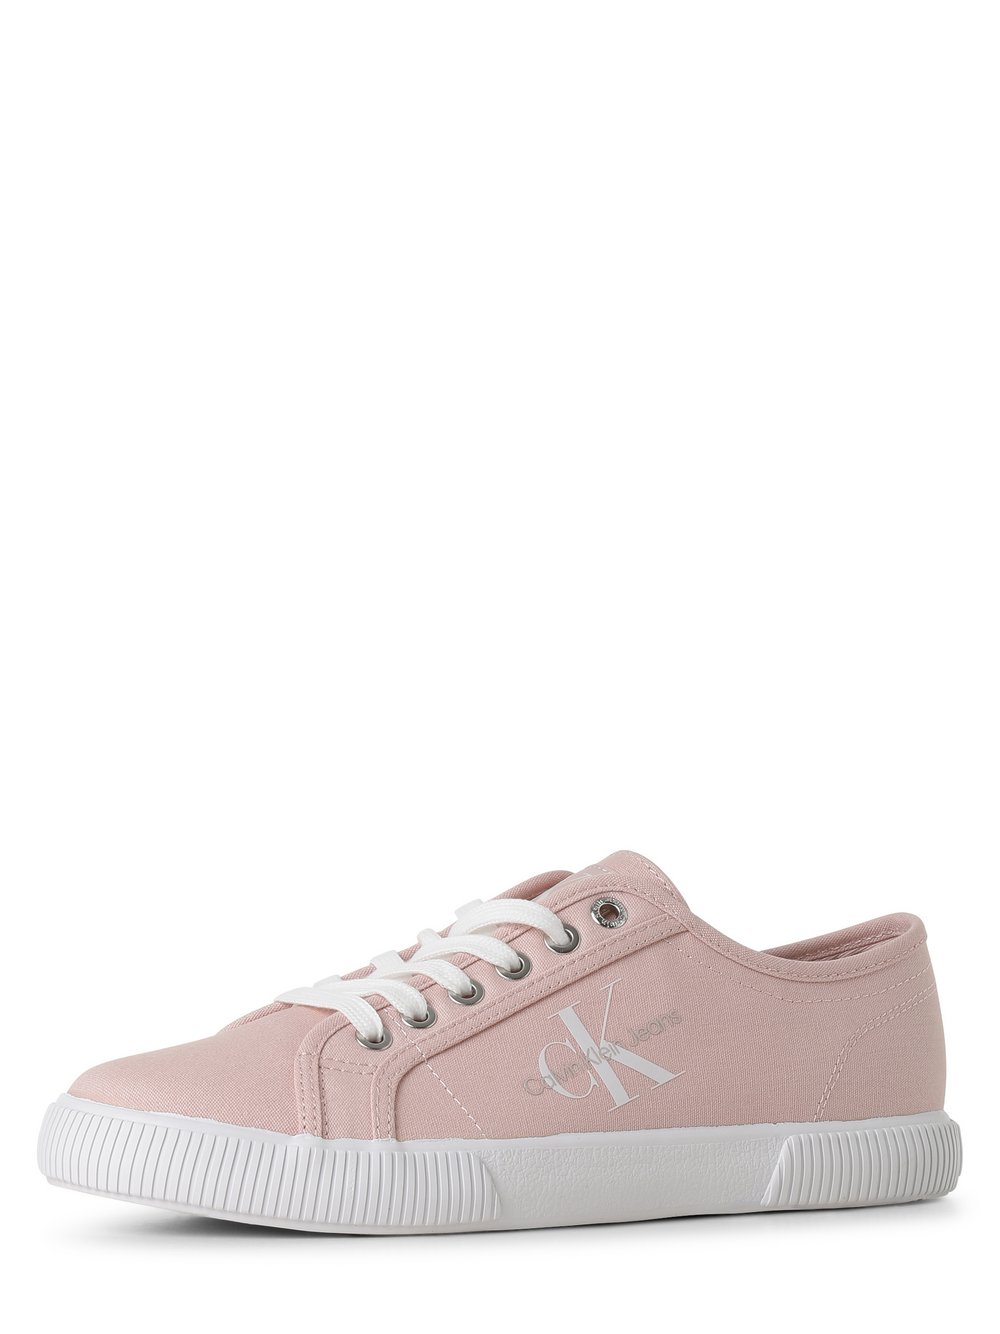 Calvin Klein Jeans - Tenisówki damskie, różowy